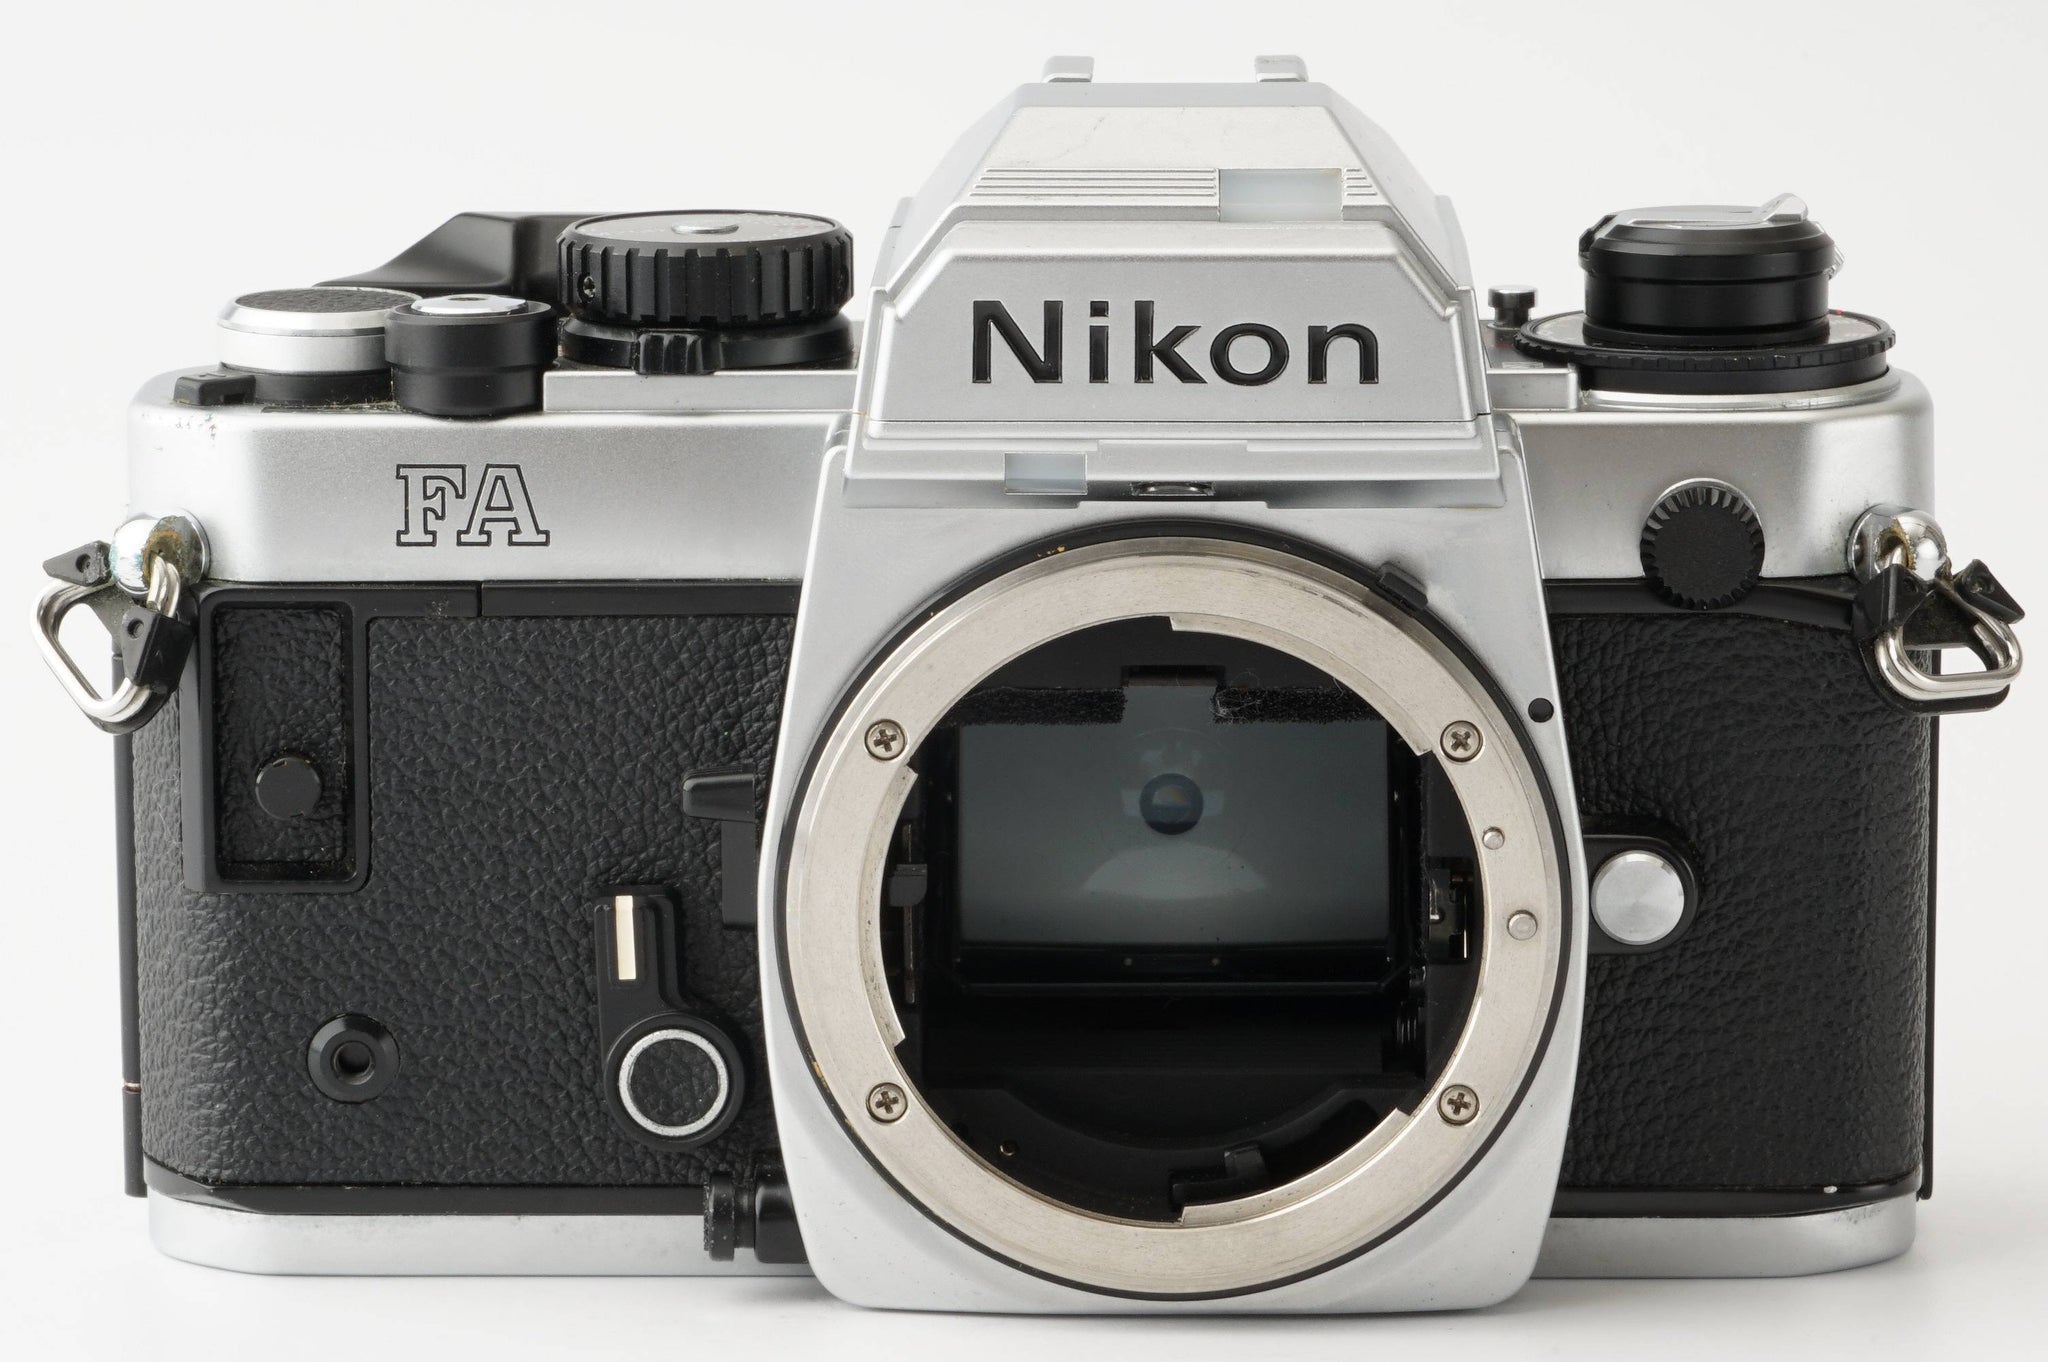 ニコン Nikon FA / Motor Drive モータードライブ MD-15 – Natural